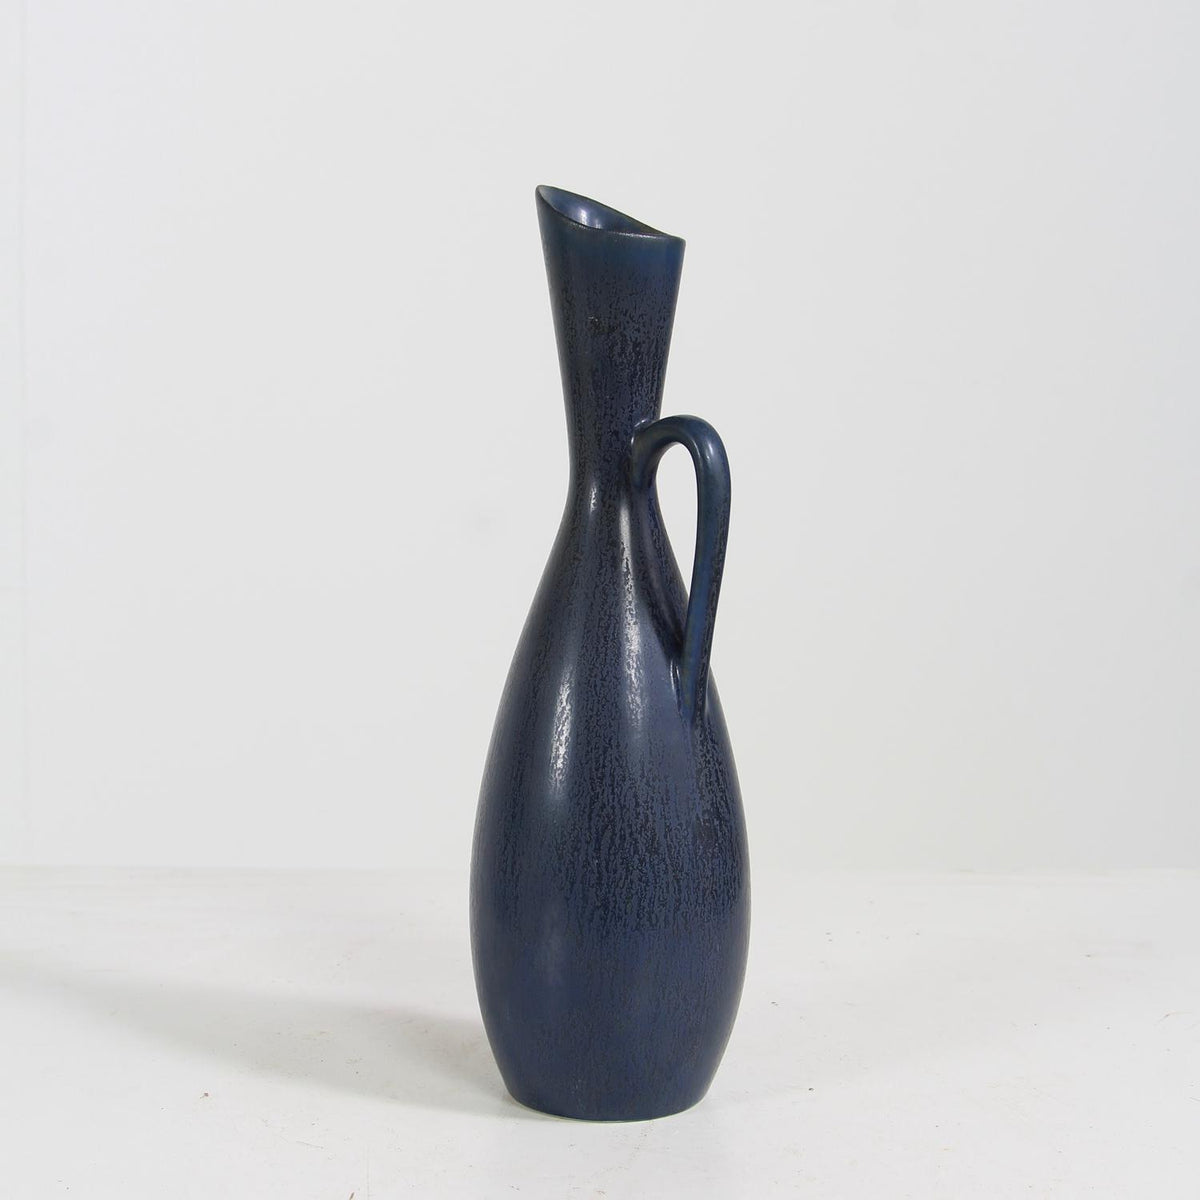 Fabulous Dark Blue 1950s Vase Designed by Carl-Harry Stålhane